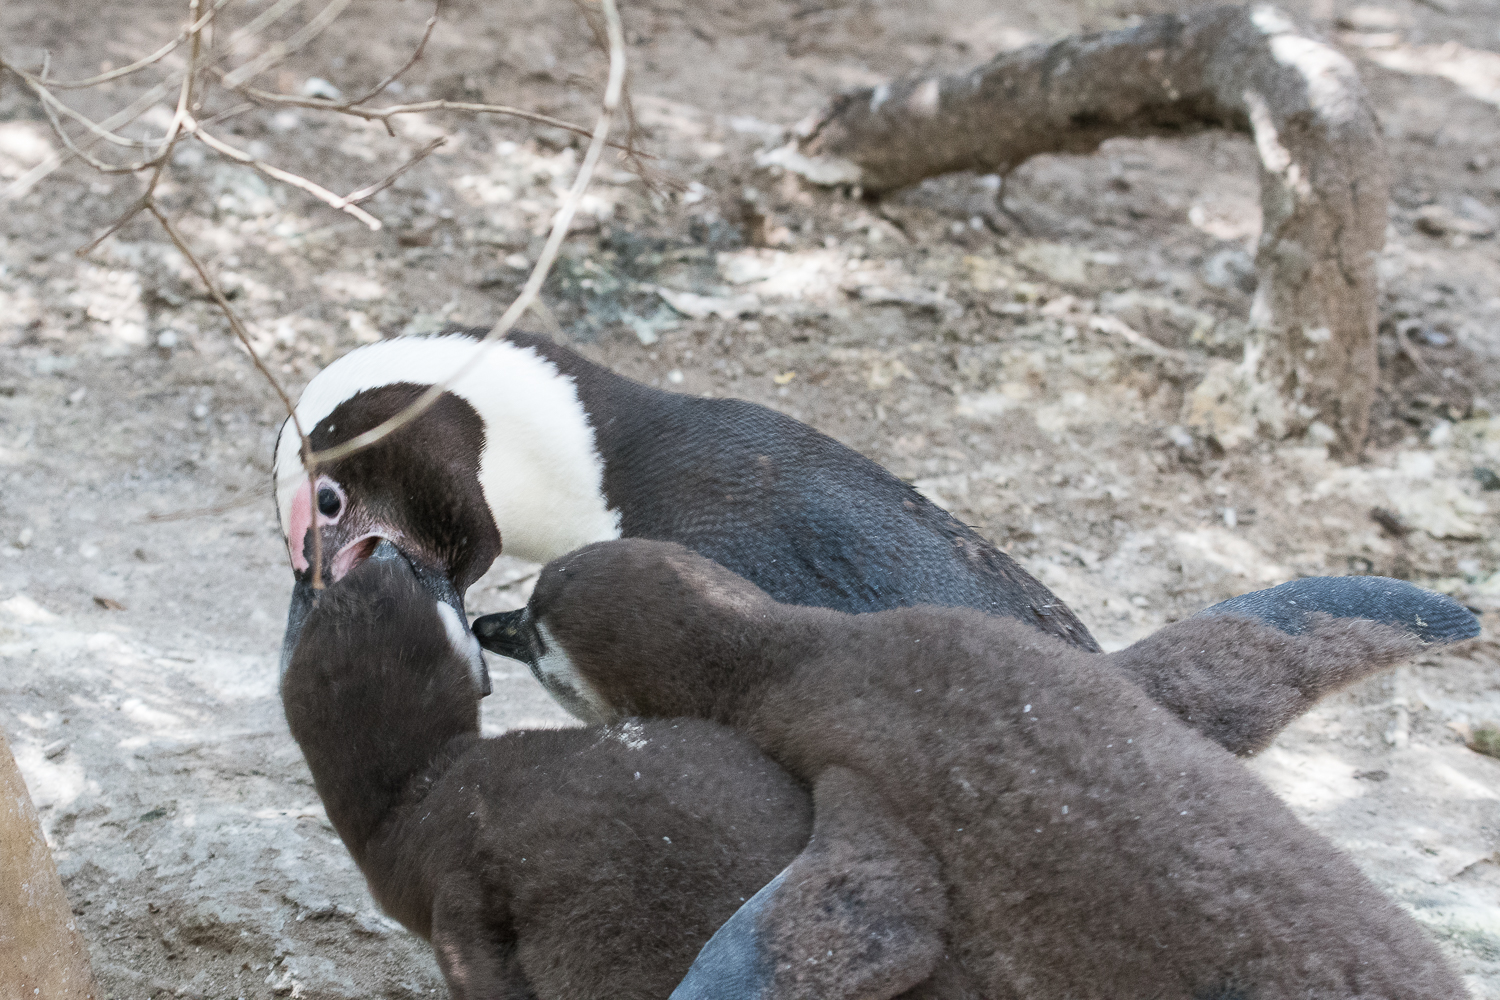 Manchots du Cap (African Penguin, Sphenicus Demersus), Boulders’ beach : Nourrissage d’un juvénile par régurgitation du contenu stomacal.